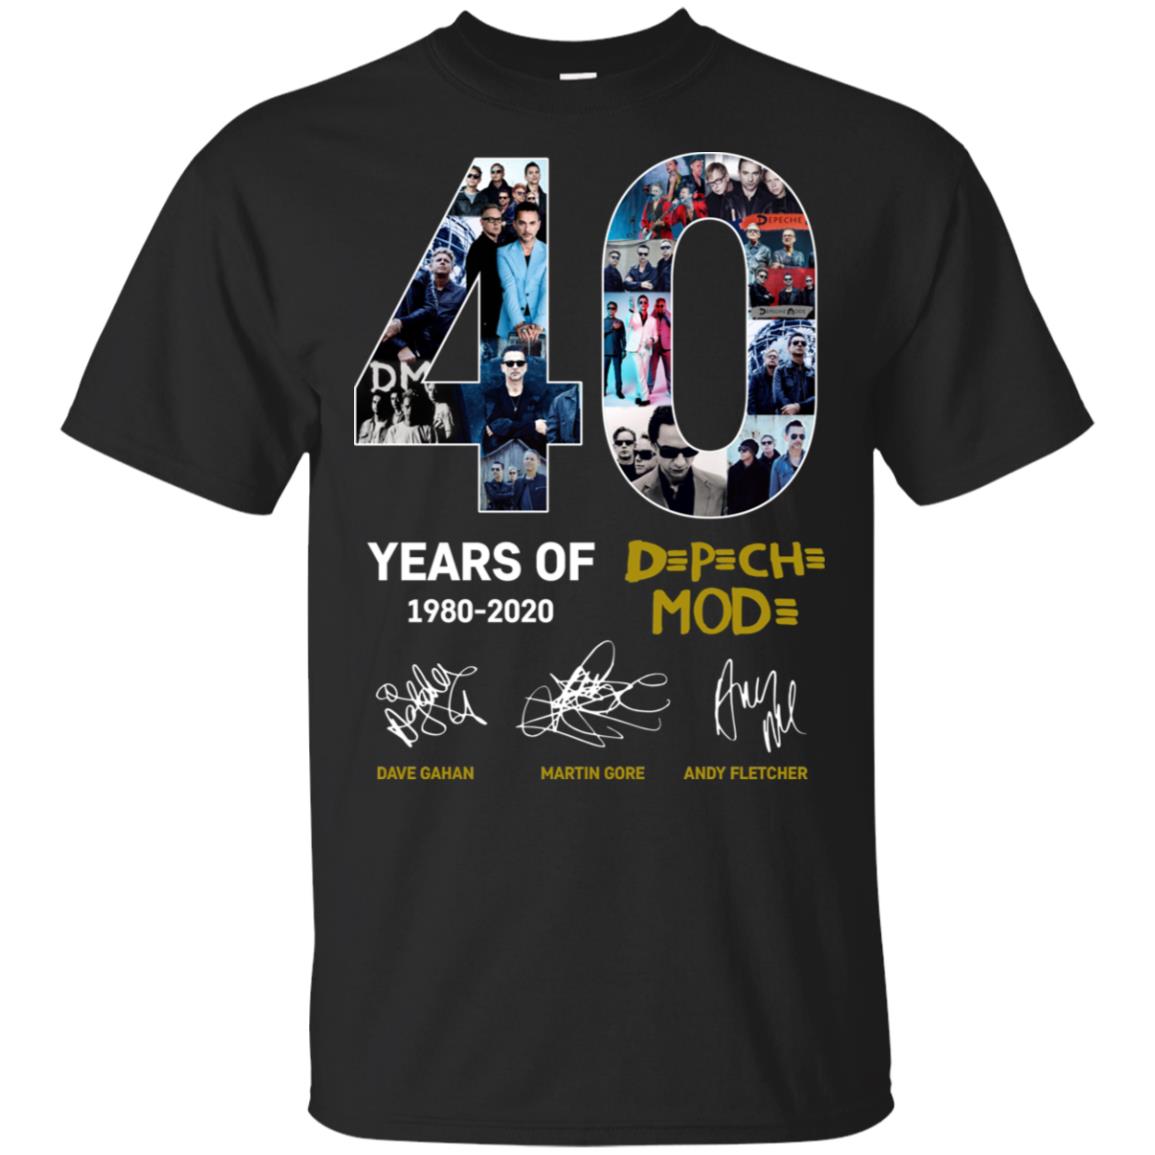 40 years of Depeche Mode 1980-2020 t shirt, tank top, hoodie -  RobinPlaceFabrics